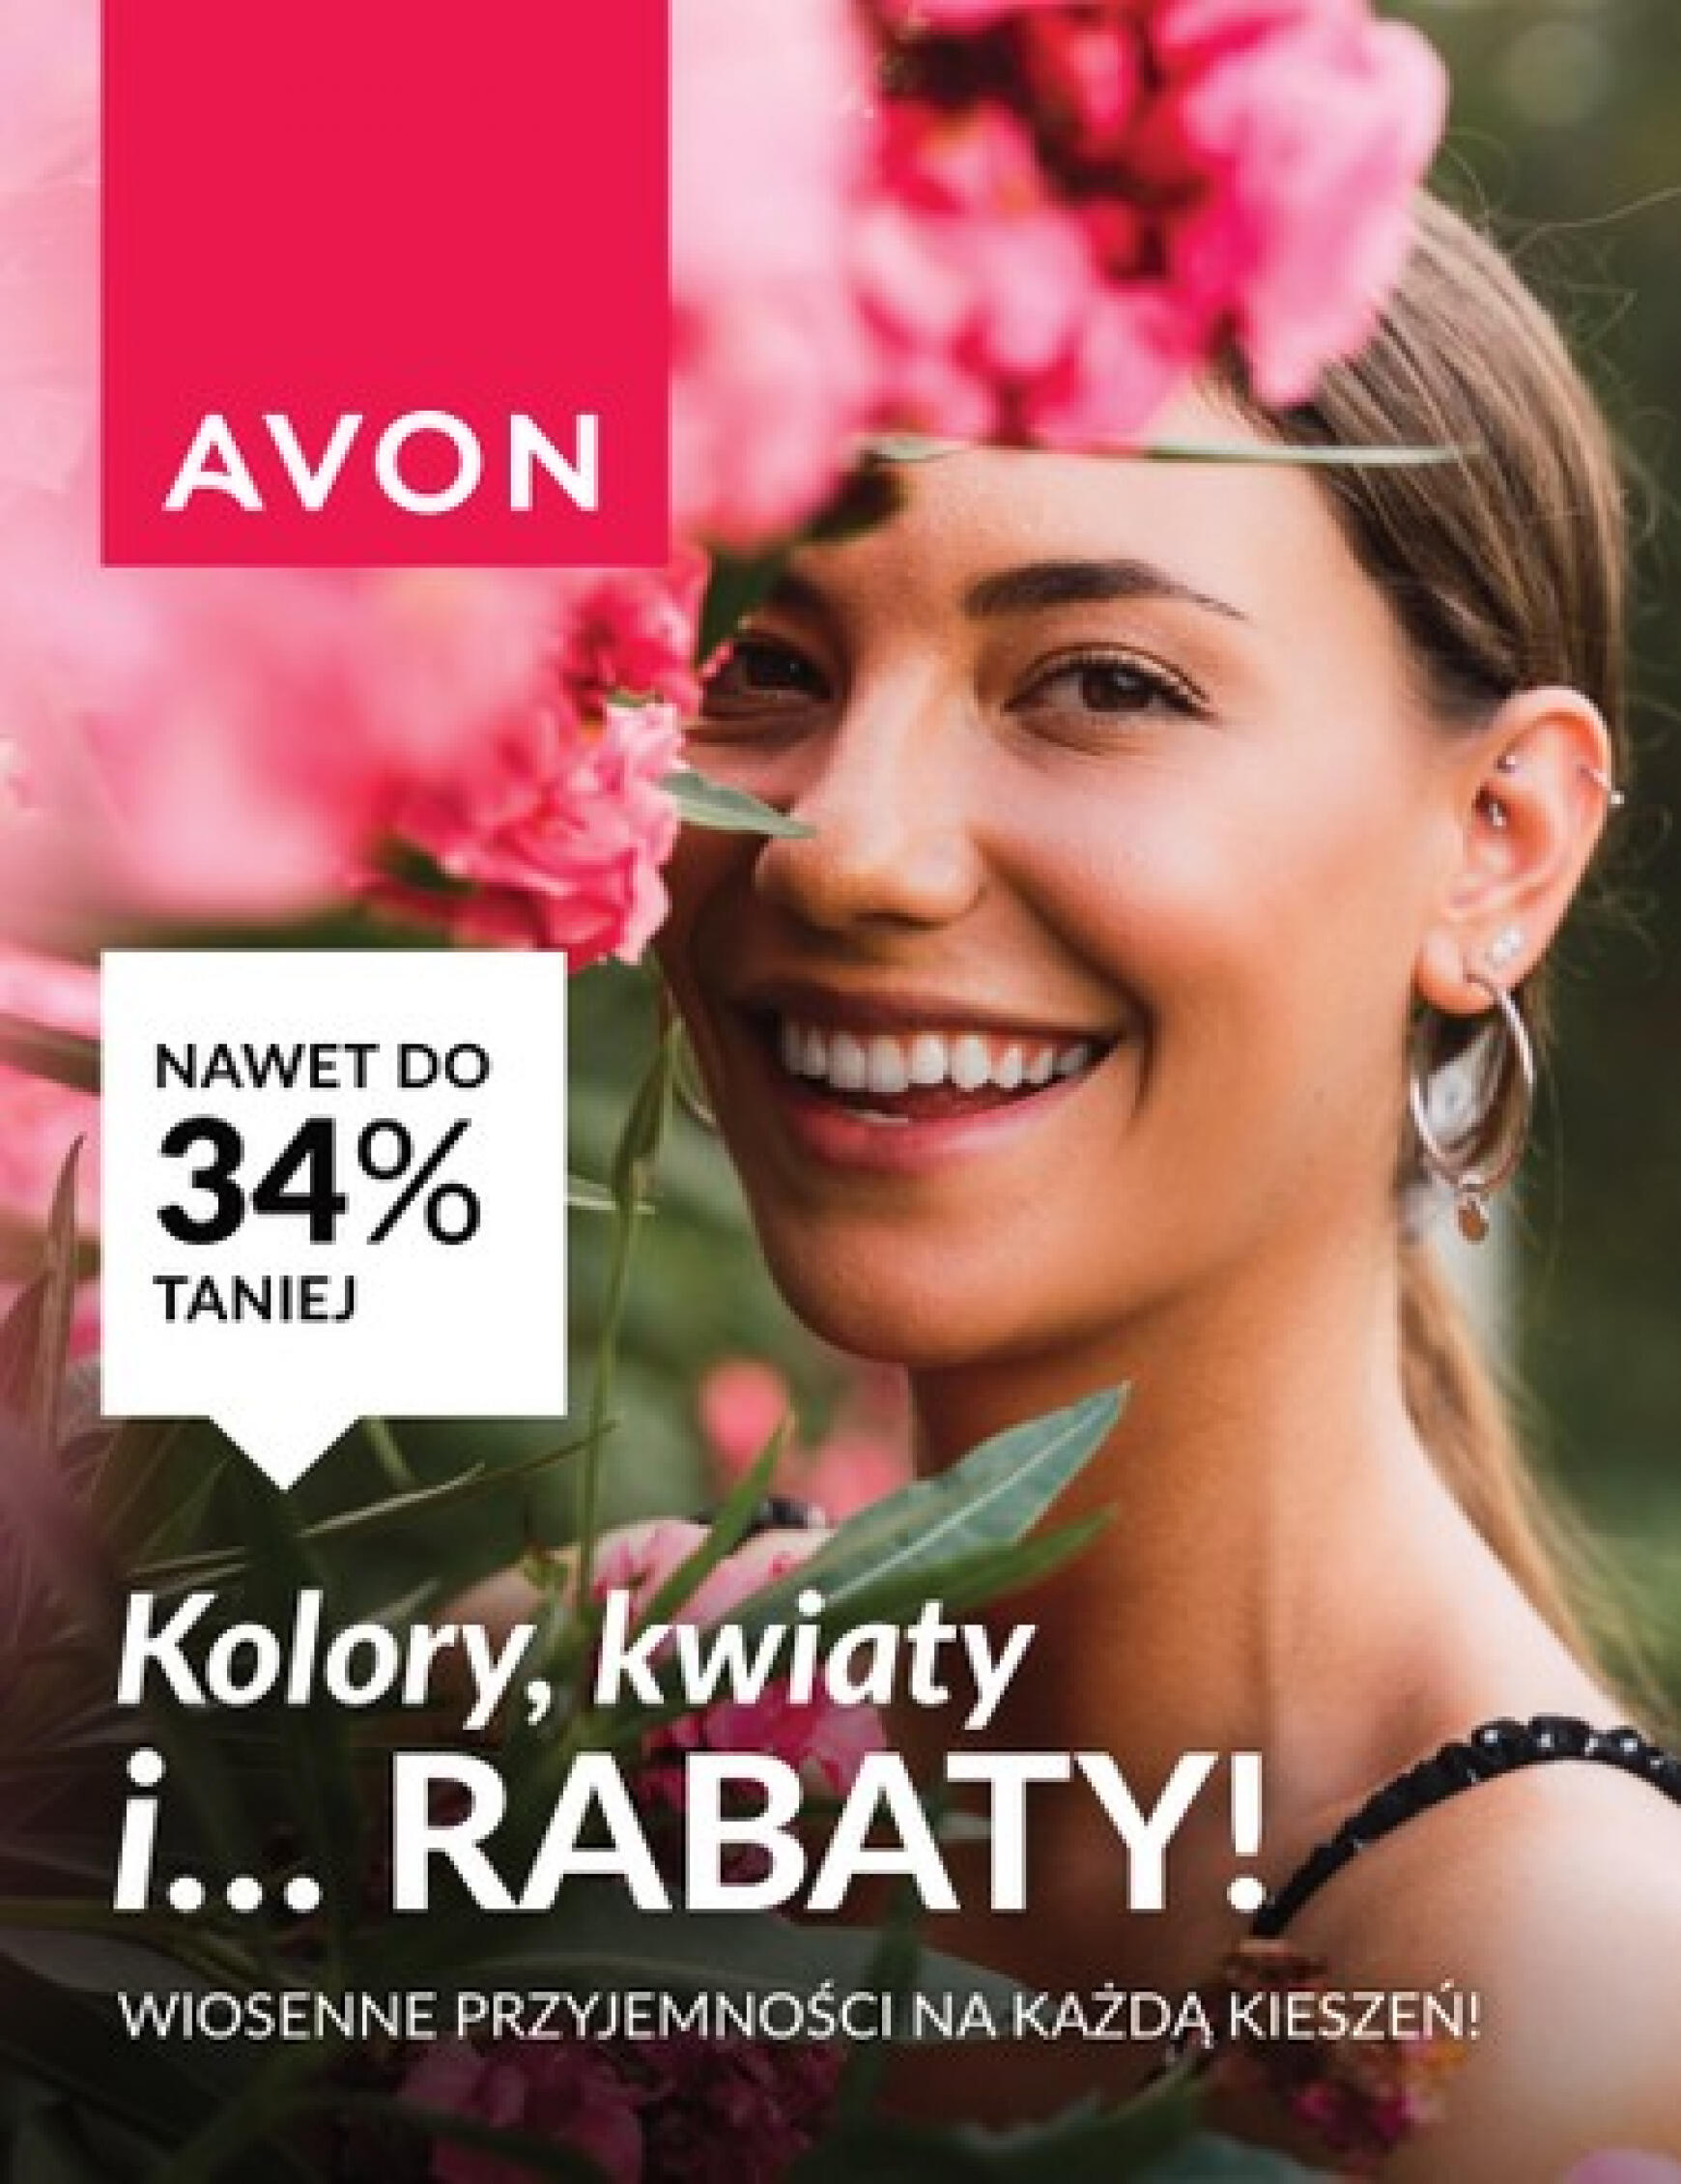 avon - Avon - Kwietniowe rabaty gazetka aktualna ważna od 17.04. - 30.04. - page: 1